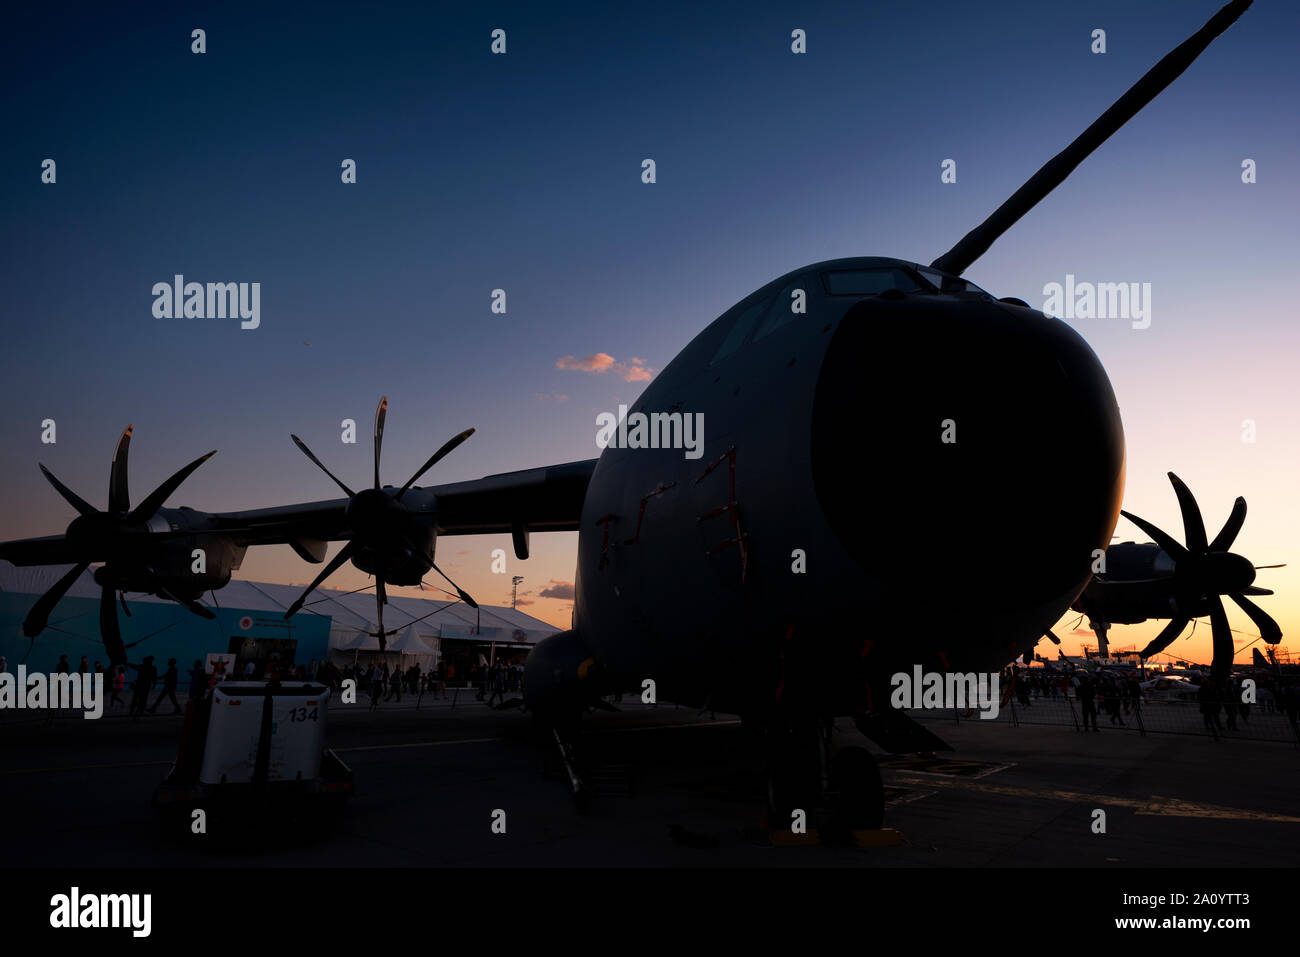 Teknofest 2019 militari di Air force technologies show in aeroporto Ataturk, Istanbul, Turchia. Settembre 21, 2019 Foto Stock